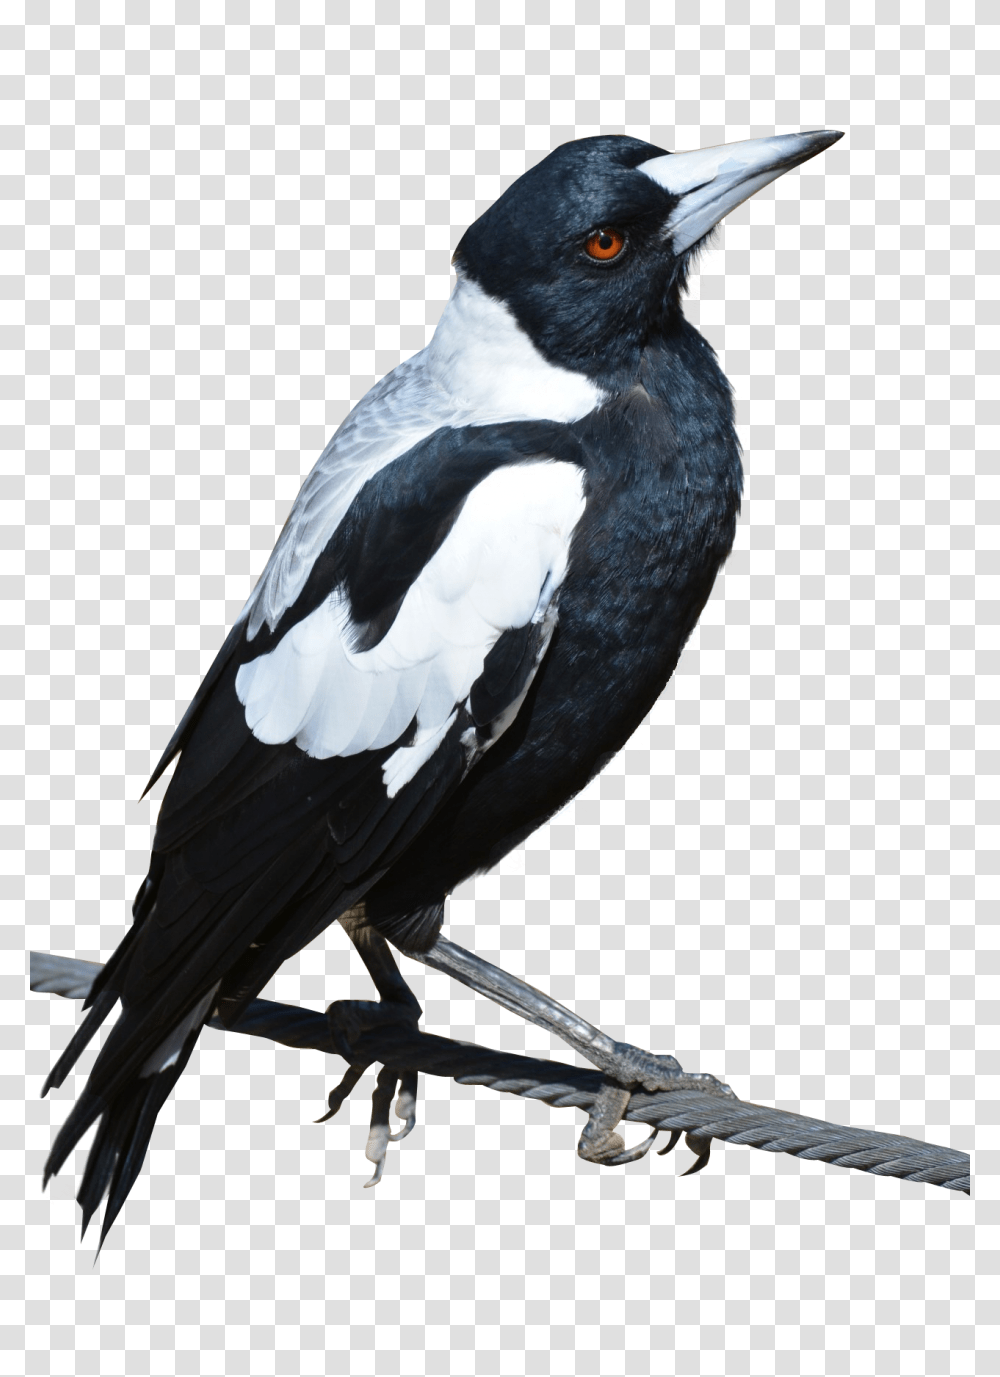 Magpie Bird Image, Animals, Blackbird, Agelaius, Beak Transparent Png